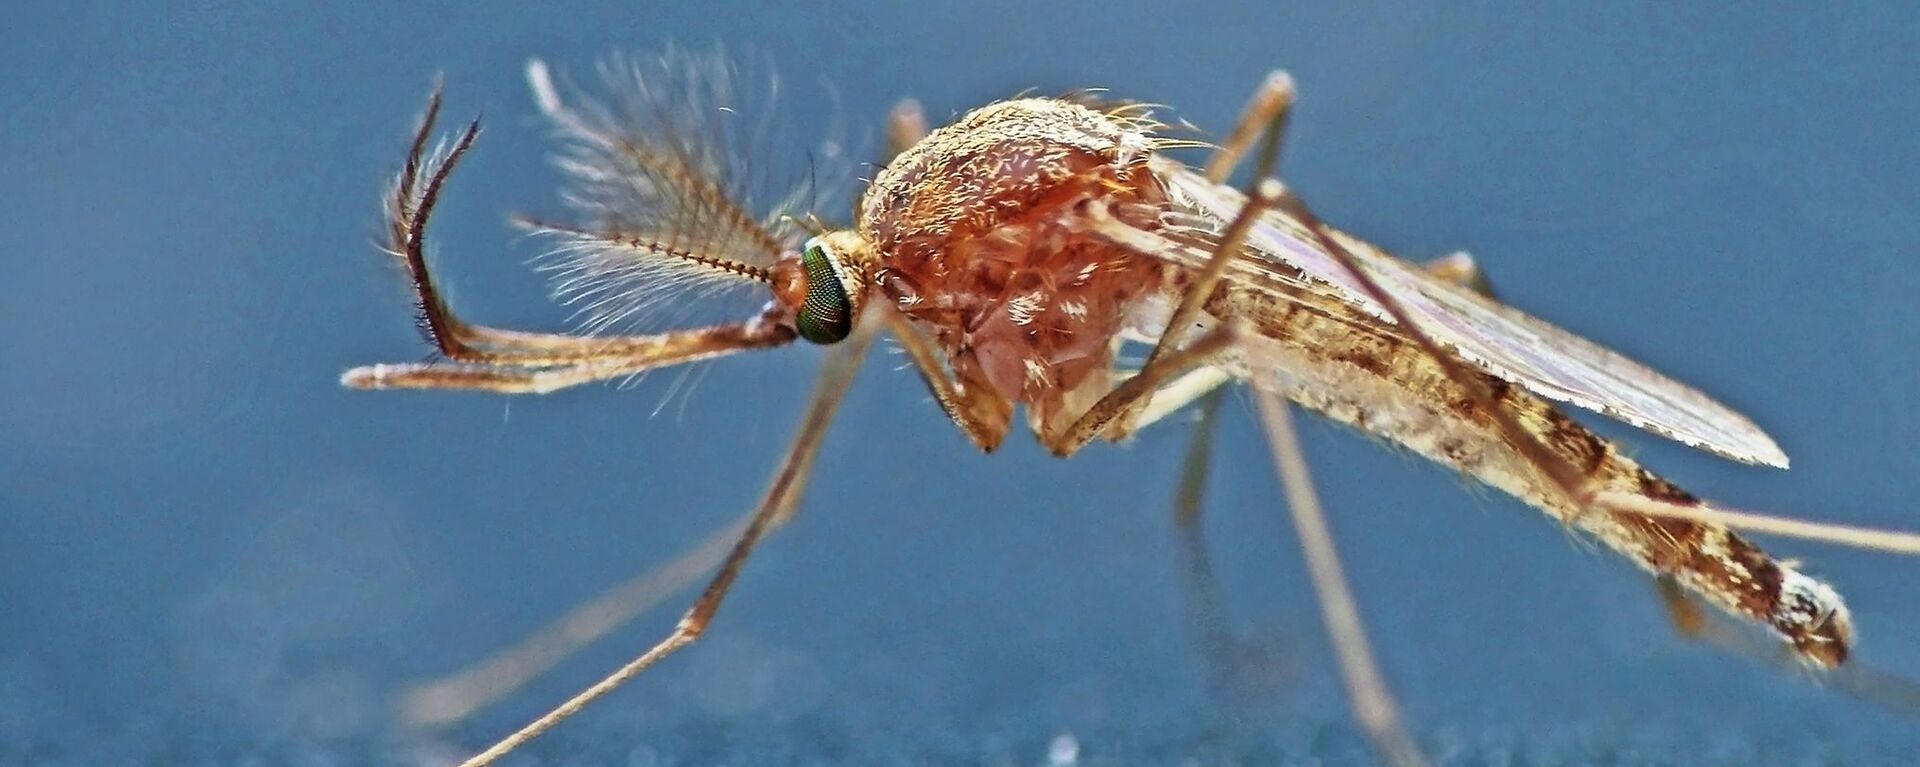 Mosquito (imagen referencial) - Sputnik Mundo, 1920, 02.09.2020